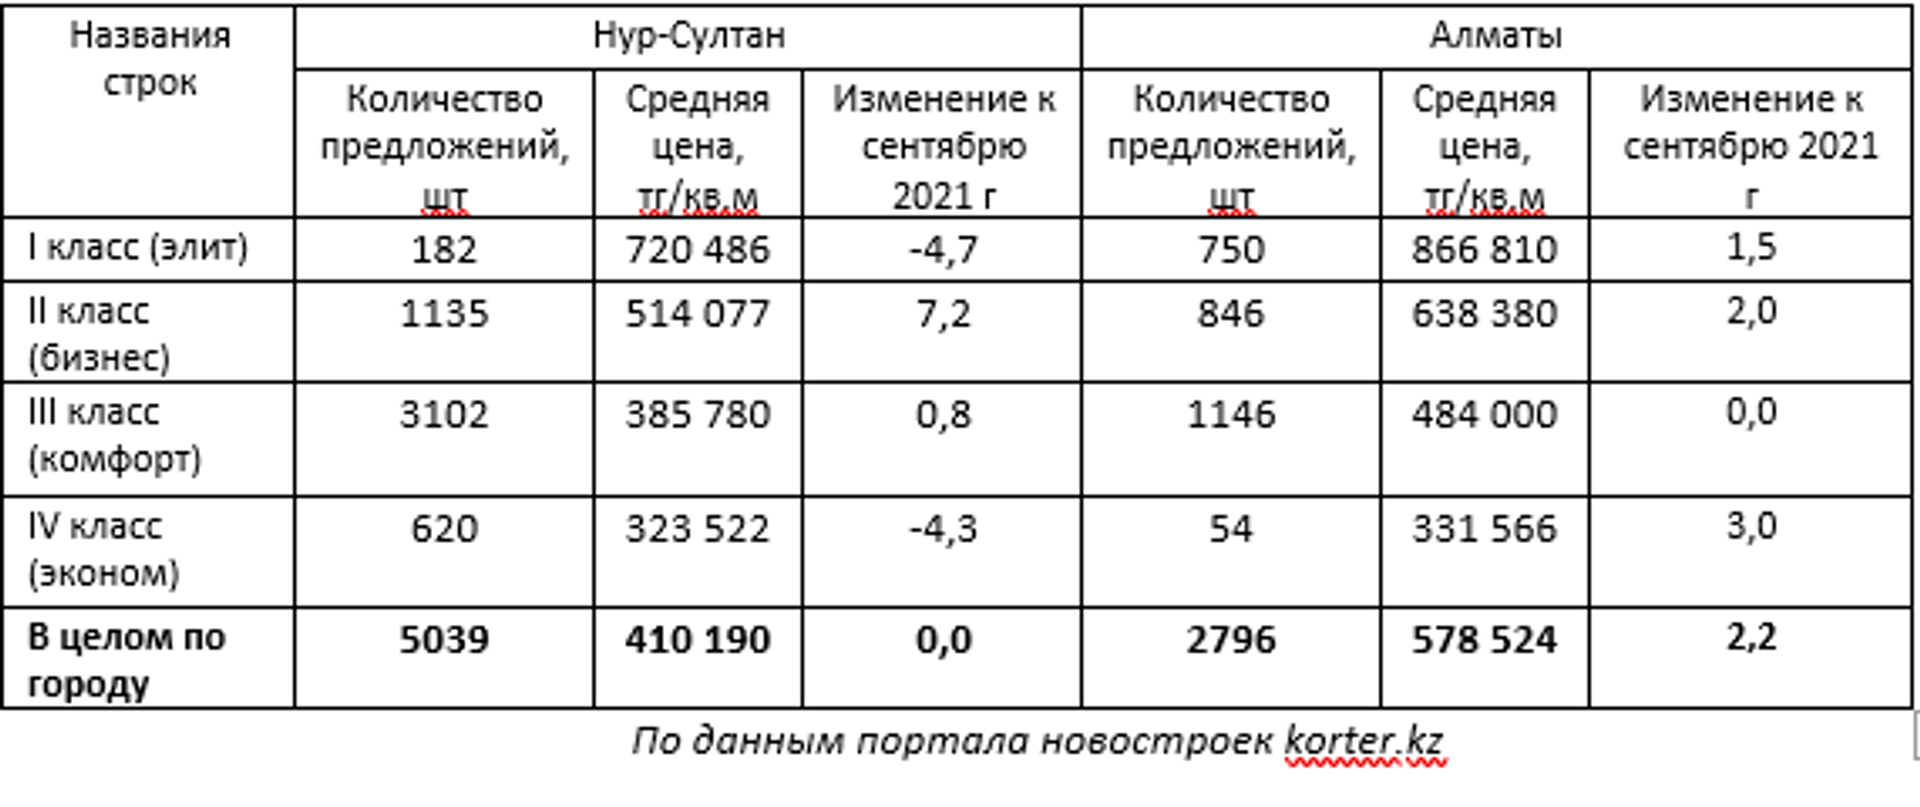 Сколько средств казахстанцы инвестировали в жилье в 2021 году - Sputnik Казахстан, 1920, 10.11.2021